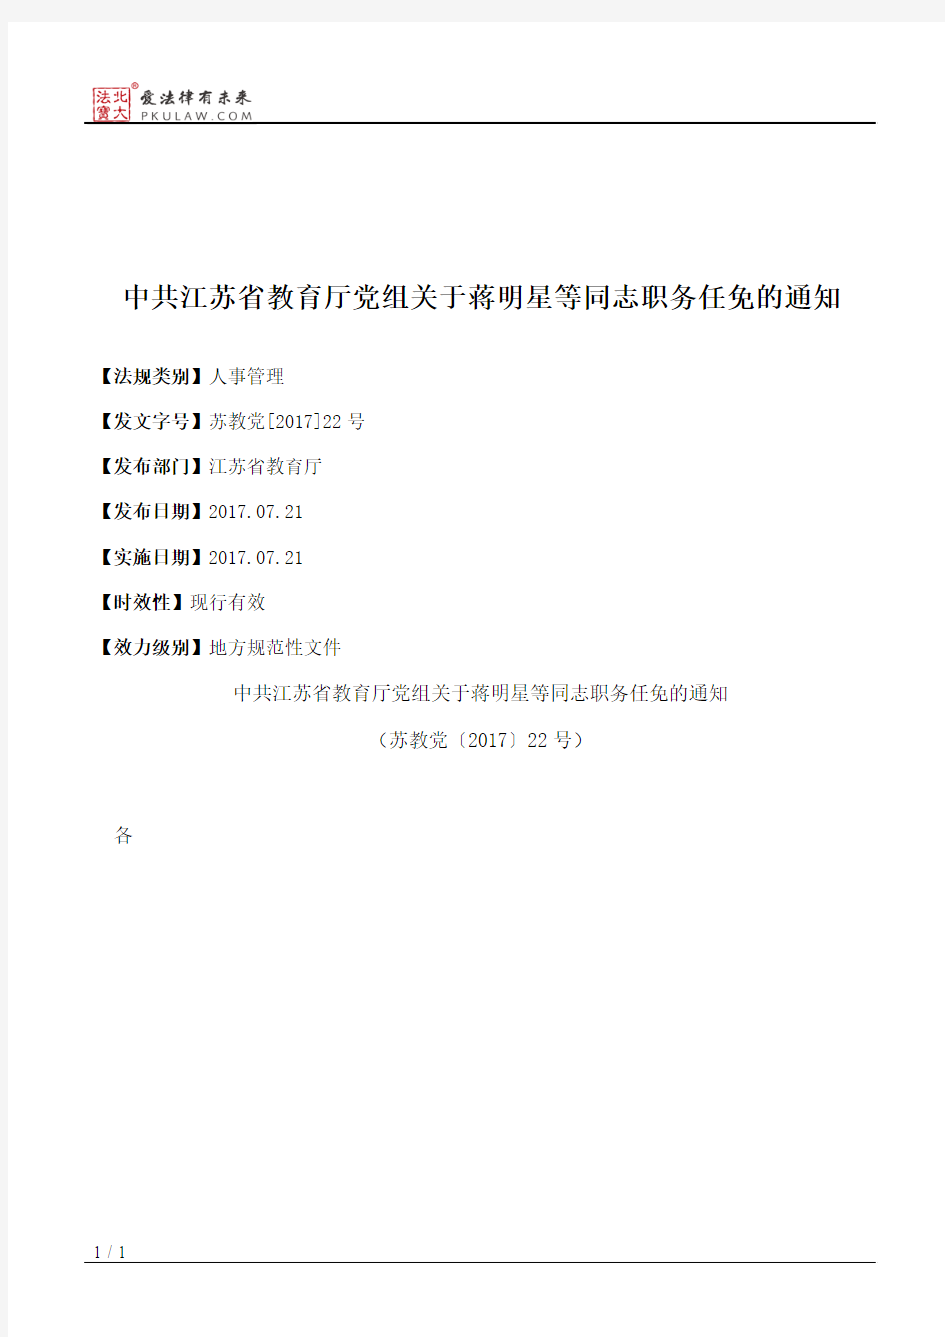 中共江苏省教育厅党组关于蒋明星等同志职务任免的通知